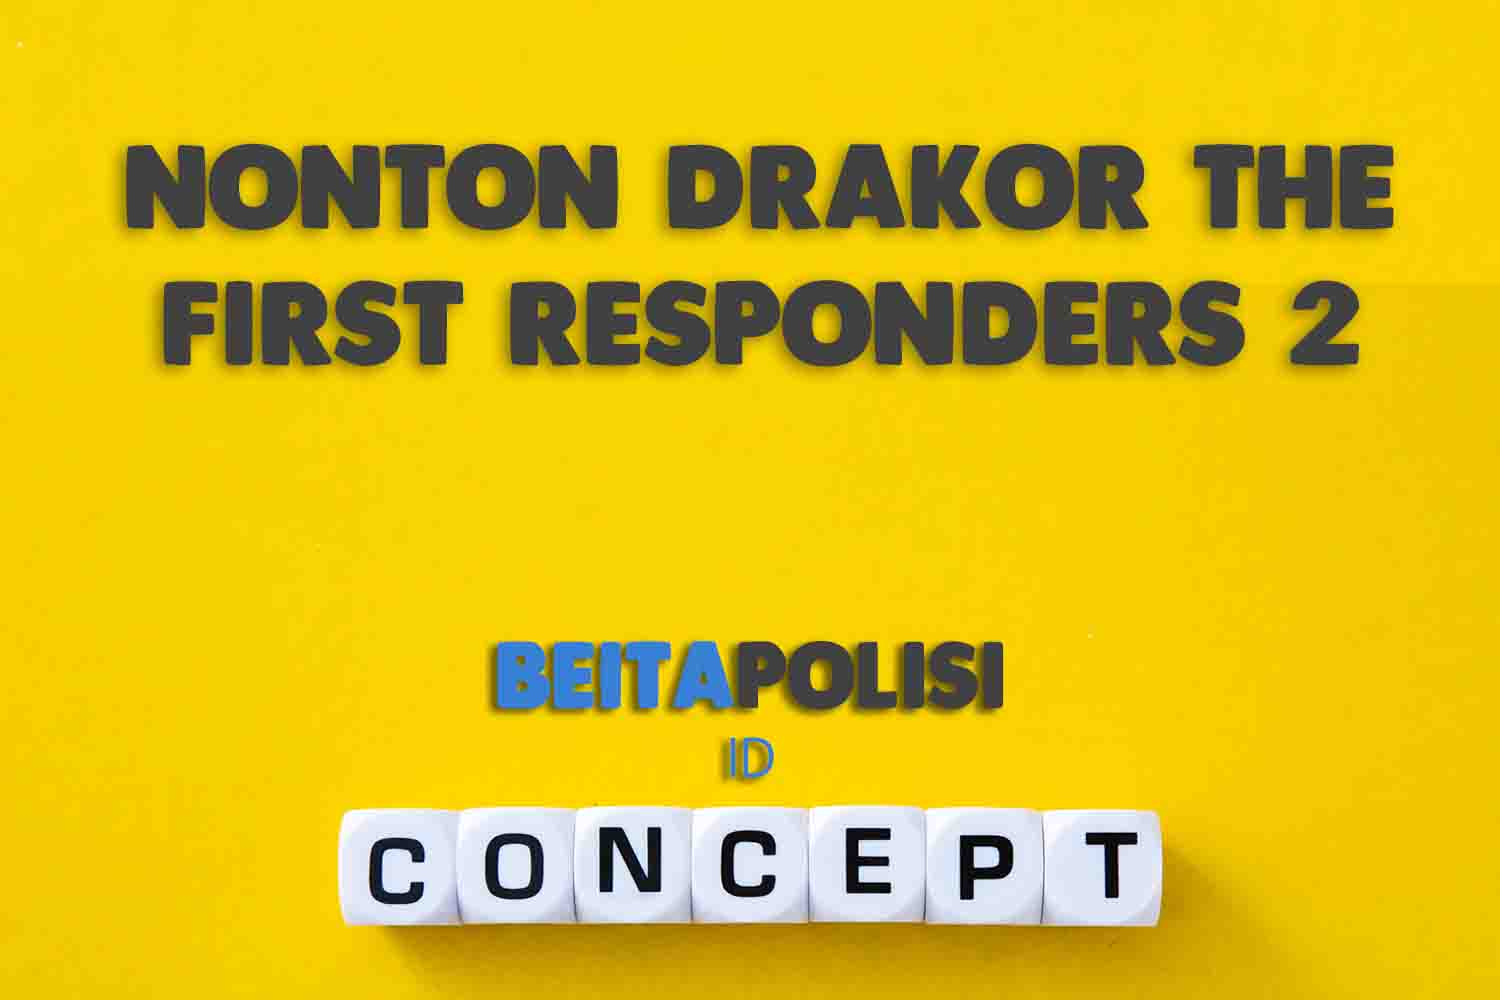 Nonton Drakor The First Responders 2 Episode 1 Sub Indo Dimana Cek Juga Jadwal Tayang Di Sini